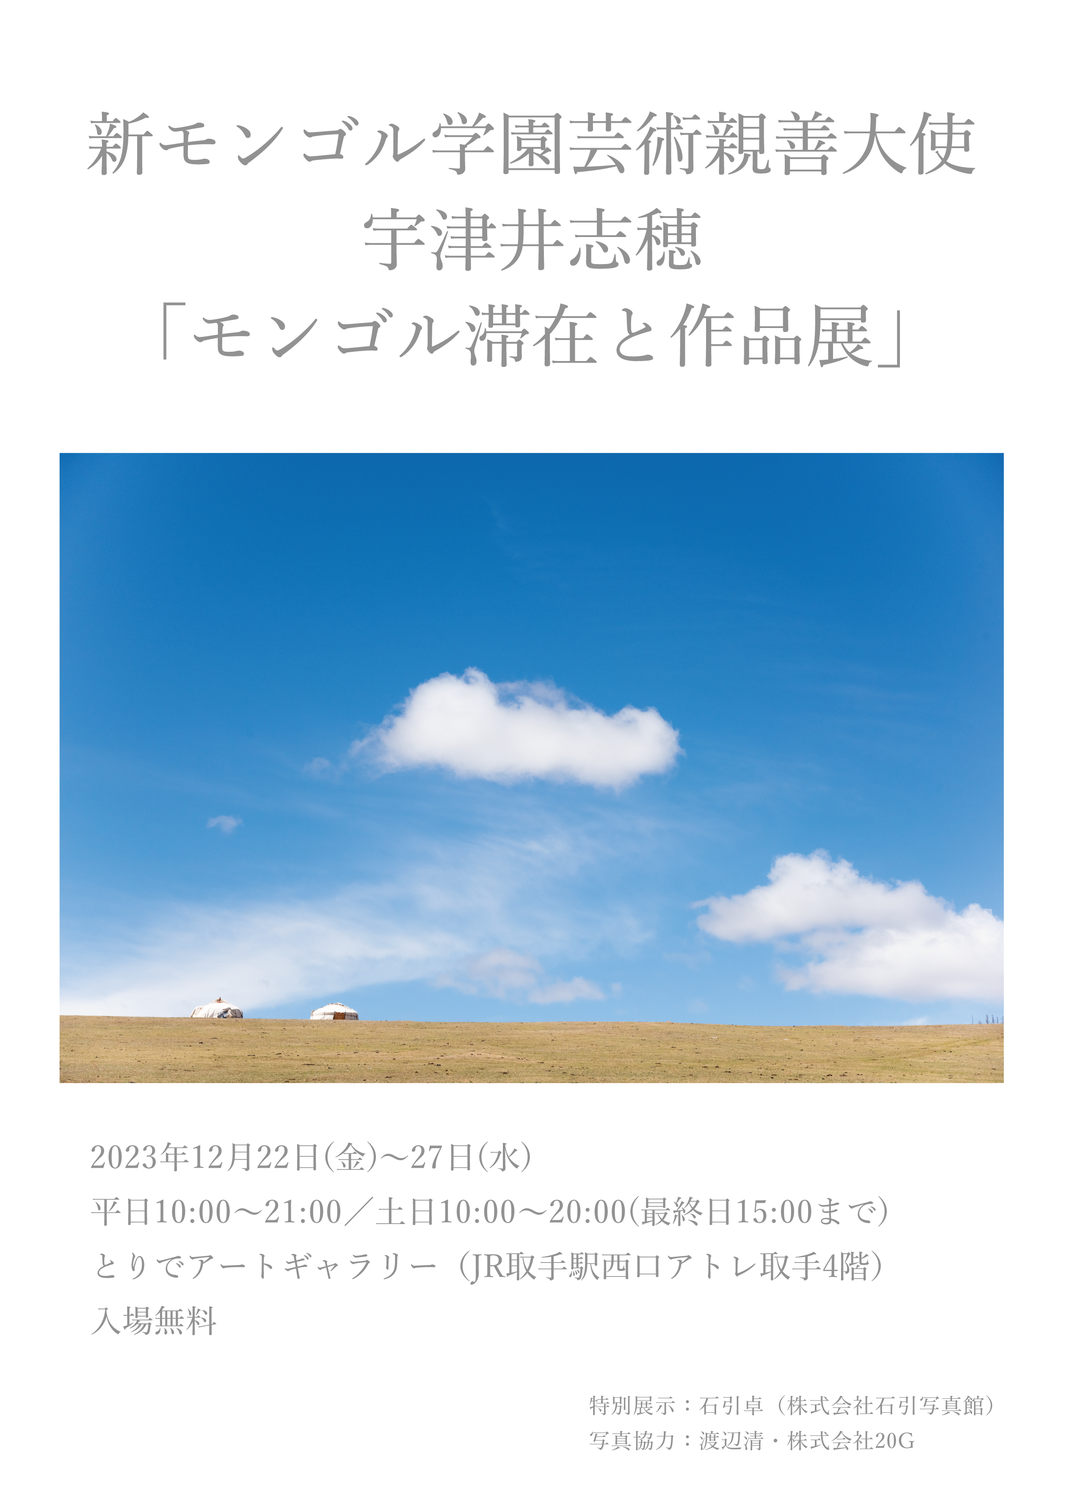 『新モンゴル学園親善大使・宇津井志穂モンゴル滞在と作品展』を開催します